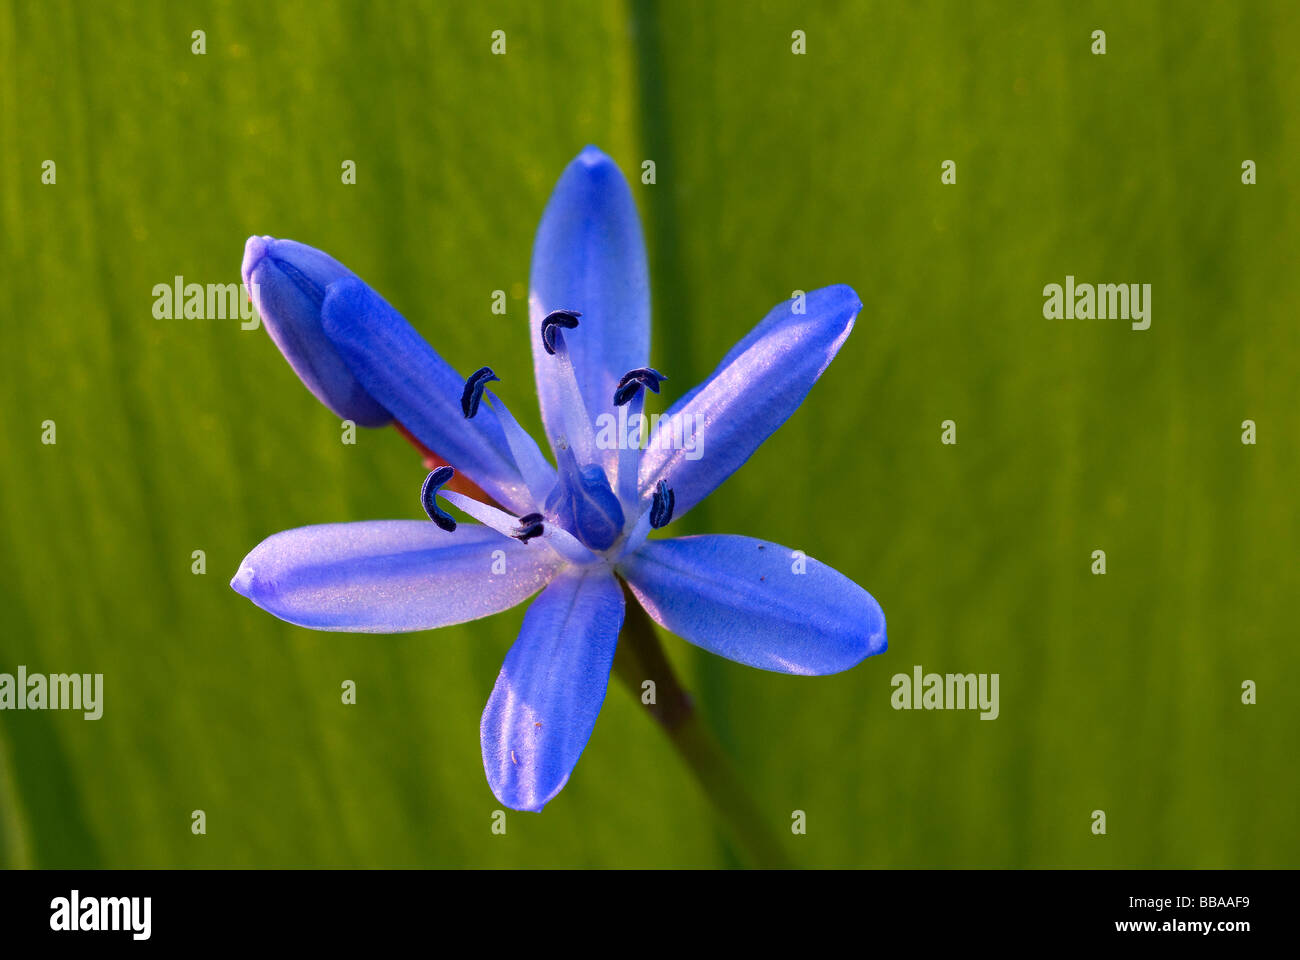 Blüte von einem blauen Blaustern (Scilla) vor einem Blatt Bärlauch (Allium Ursinum) Stockfoto